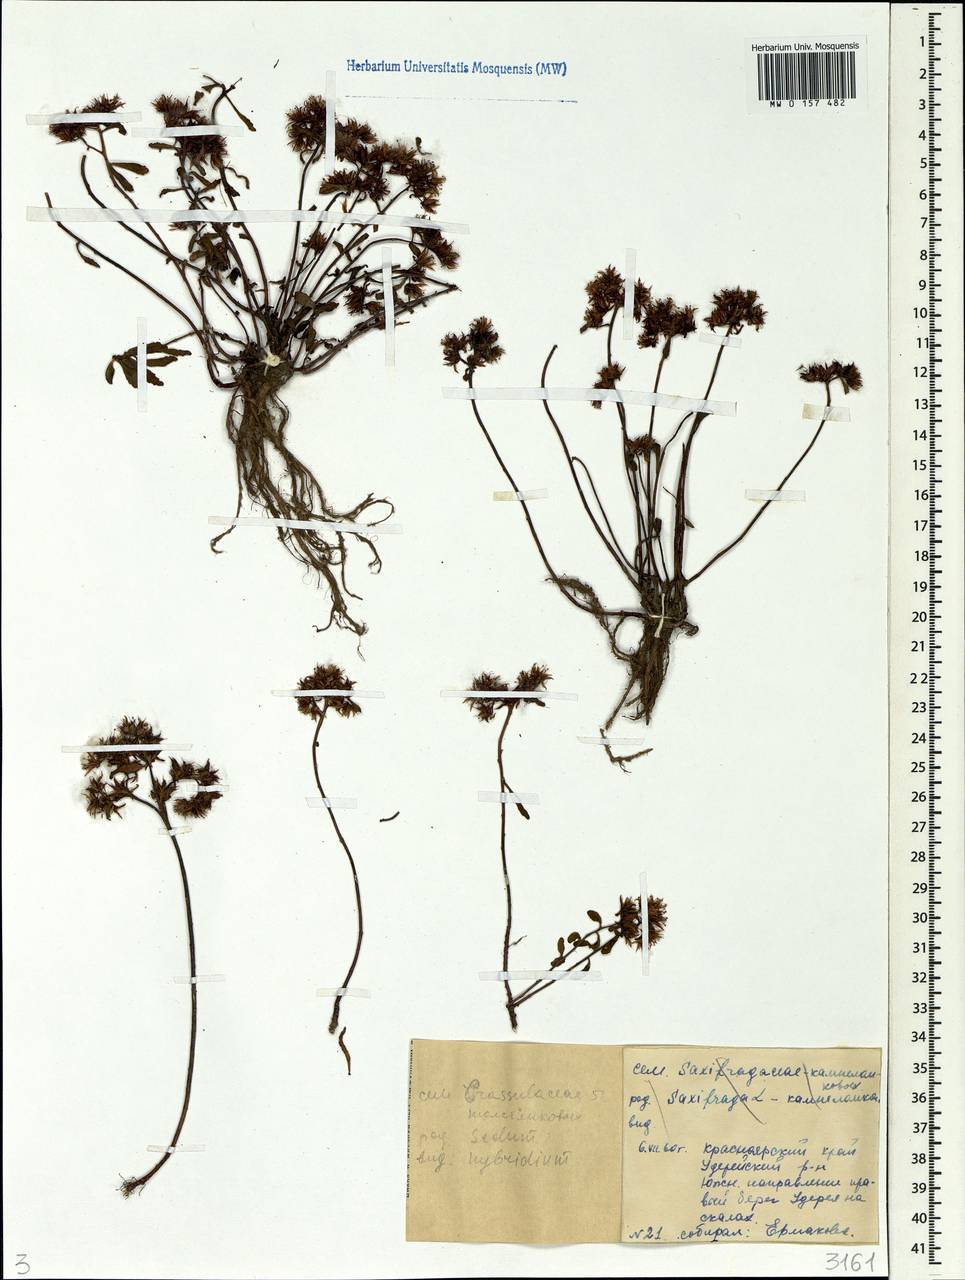 Phedimus hybridus (L.) 't Hart, Siberia, Central Siberia (S3) (Russia)